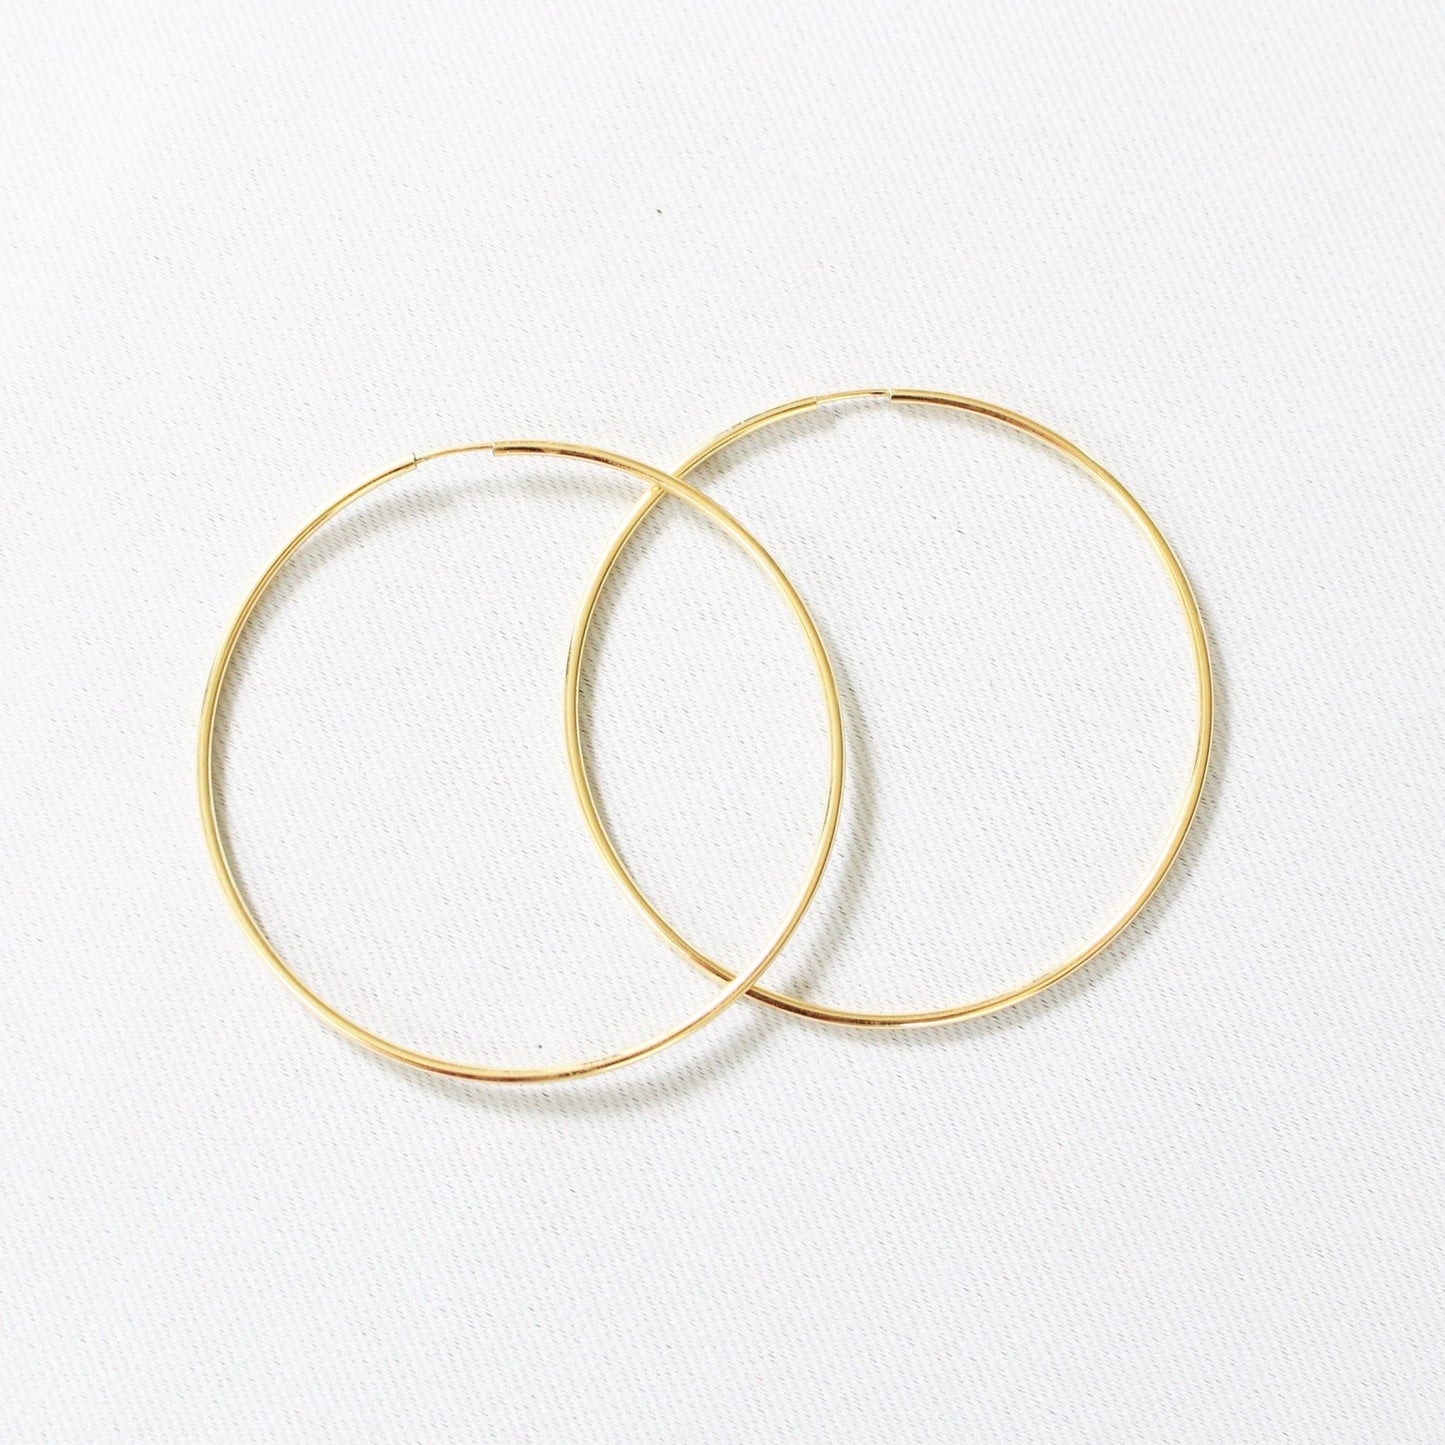 14kt gold filled hoops earrings 50 mm ∙ Minimalist large Creole earrings ∙ 1 pair ∙ Long lasting earrings thin big hoops